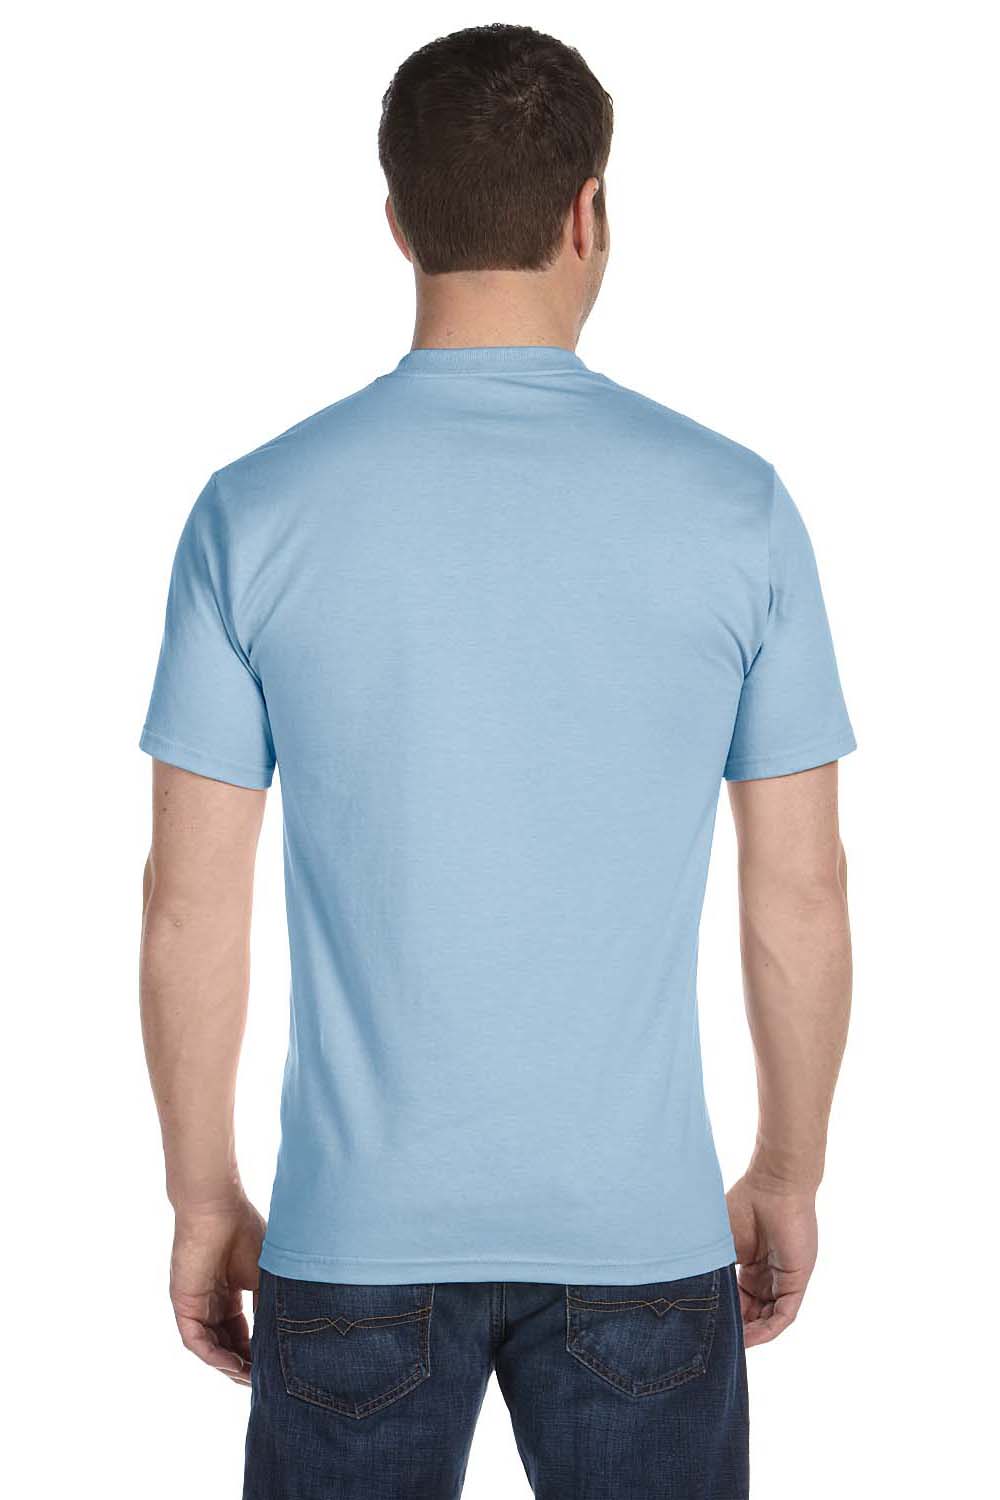 Gildan G800 Mens DryBlend Moisture Wicking Short Sleeve Crewneck T-Shirt Light Blue Back